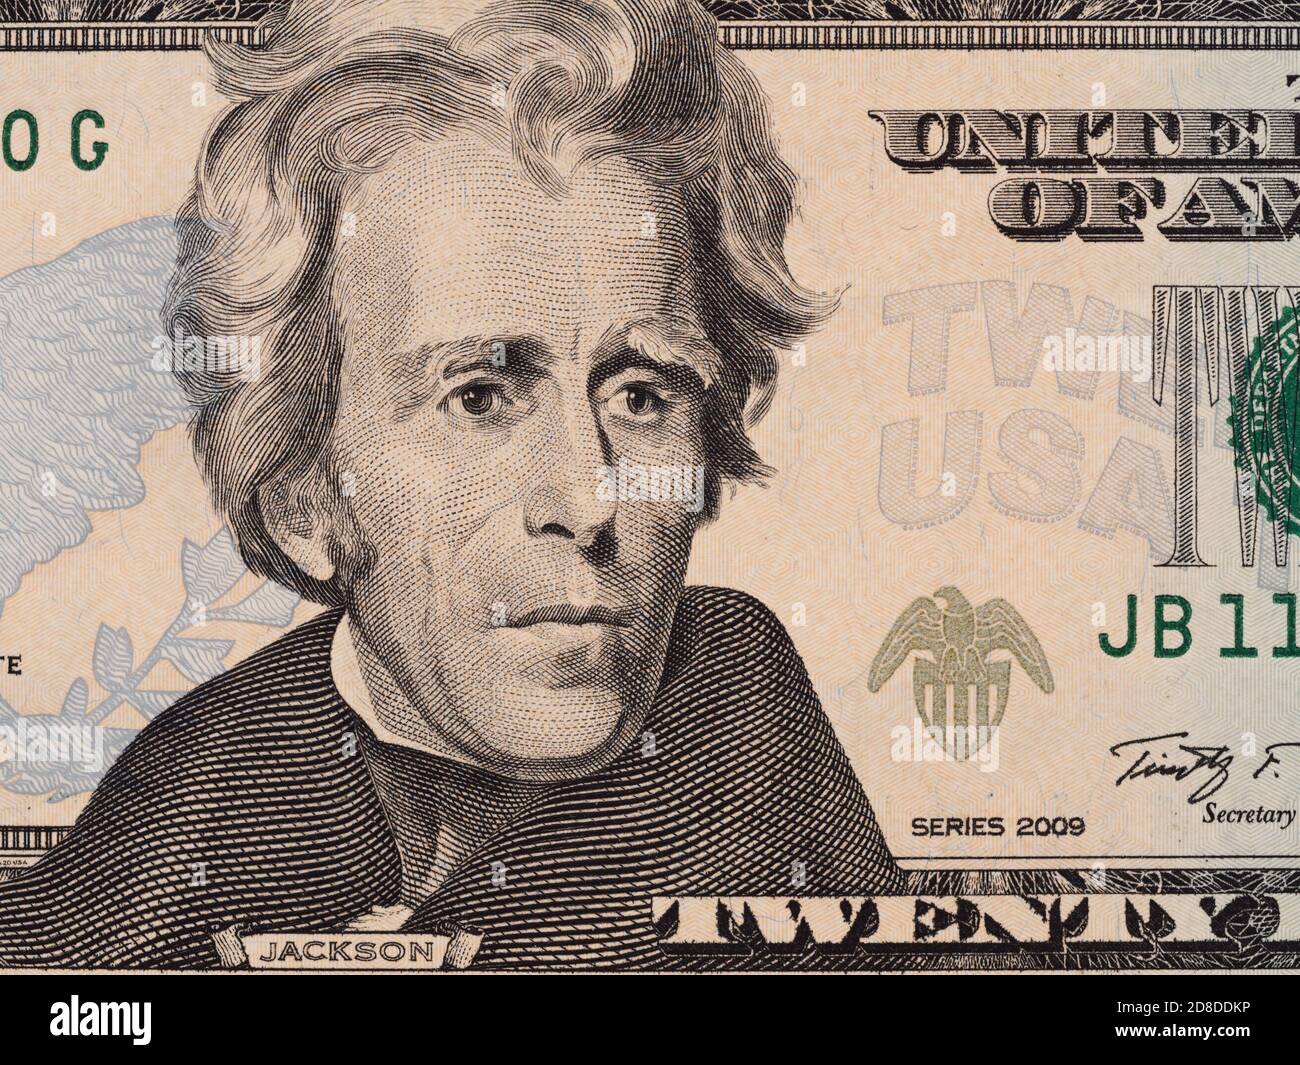 Zwanzig Dollar Geldschein Makro, 20 usd, Andrew Jackson Porträt, vereinigte Staaten Geld Nahaufnahme Stockfoto